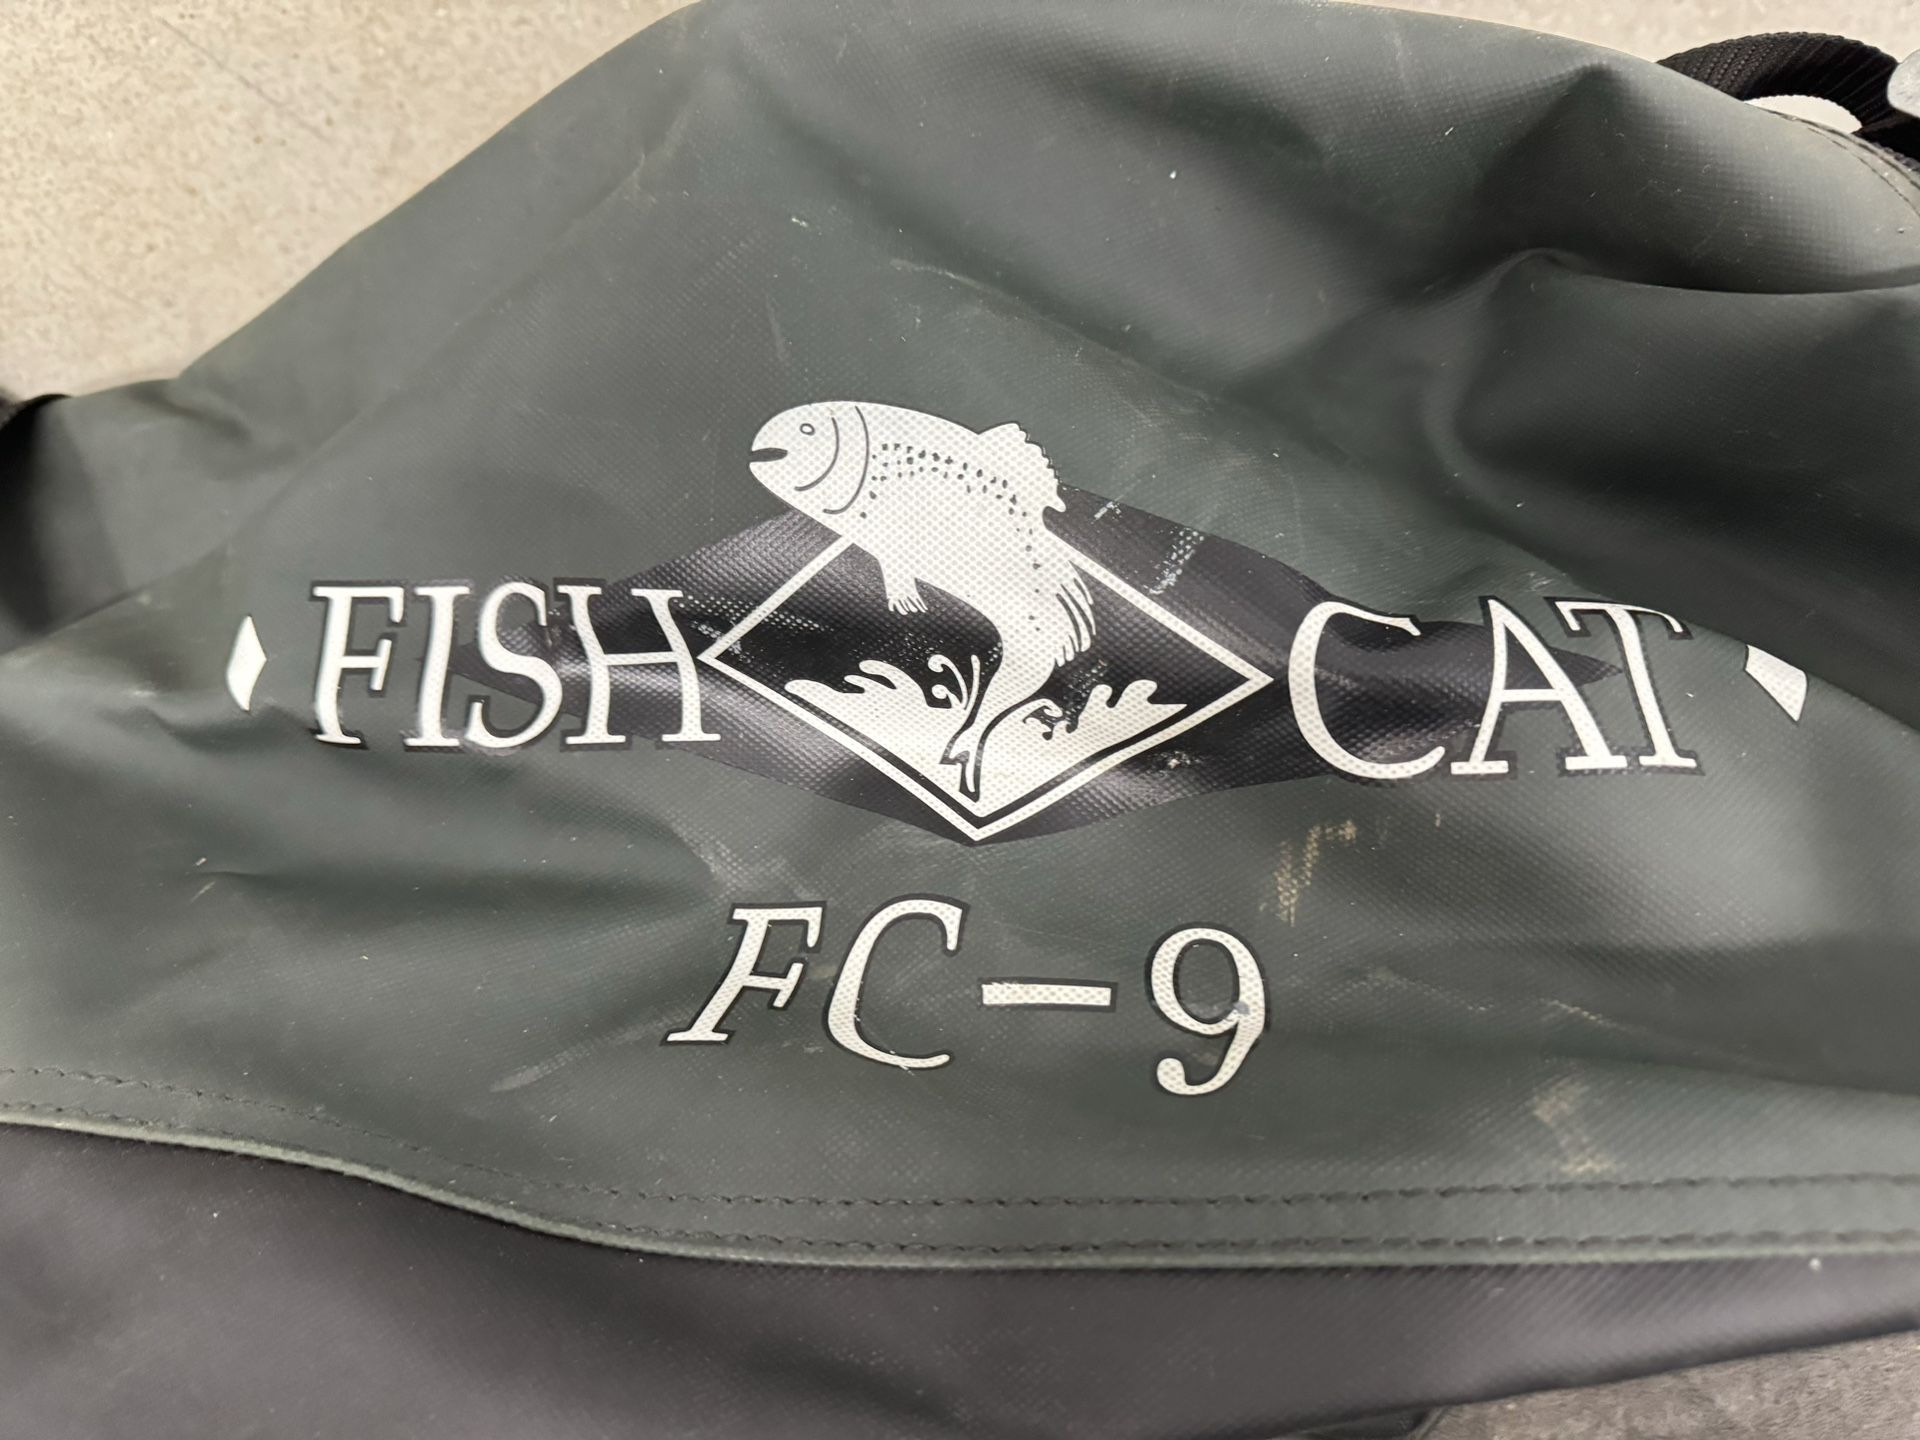 Fish CatFV-9